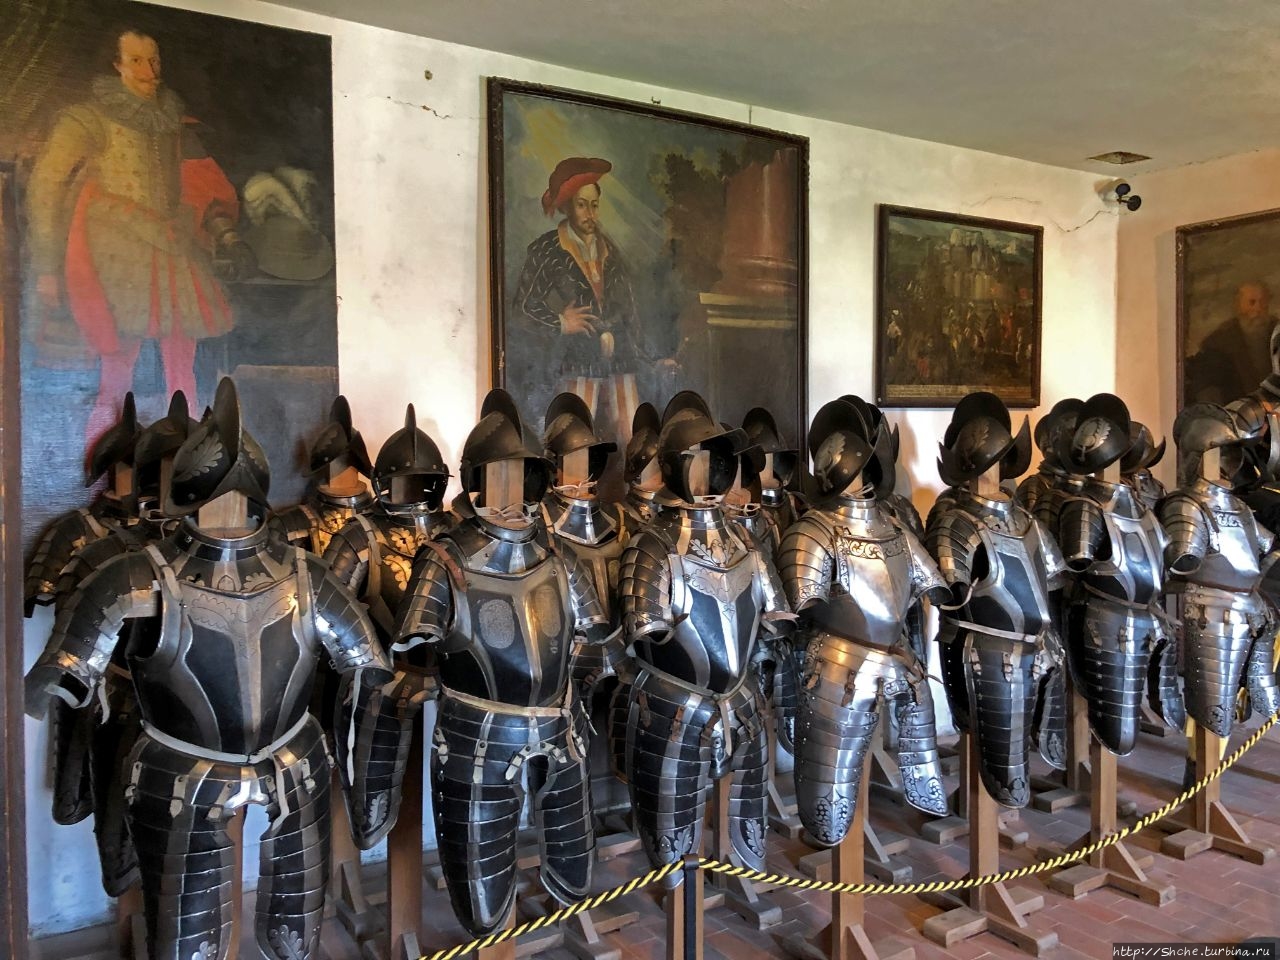 Музей средневековья в неприступном замке Хохостервиц